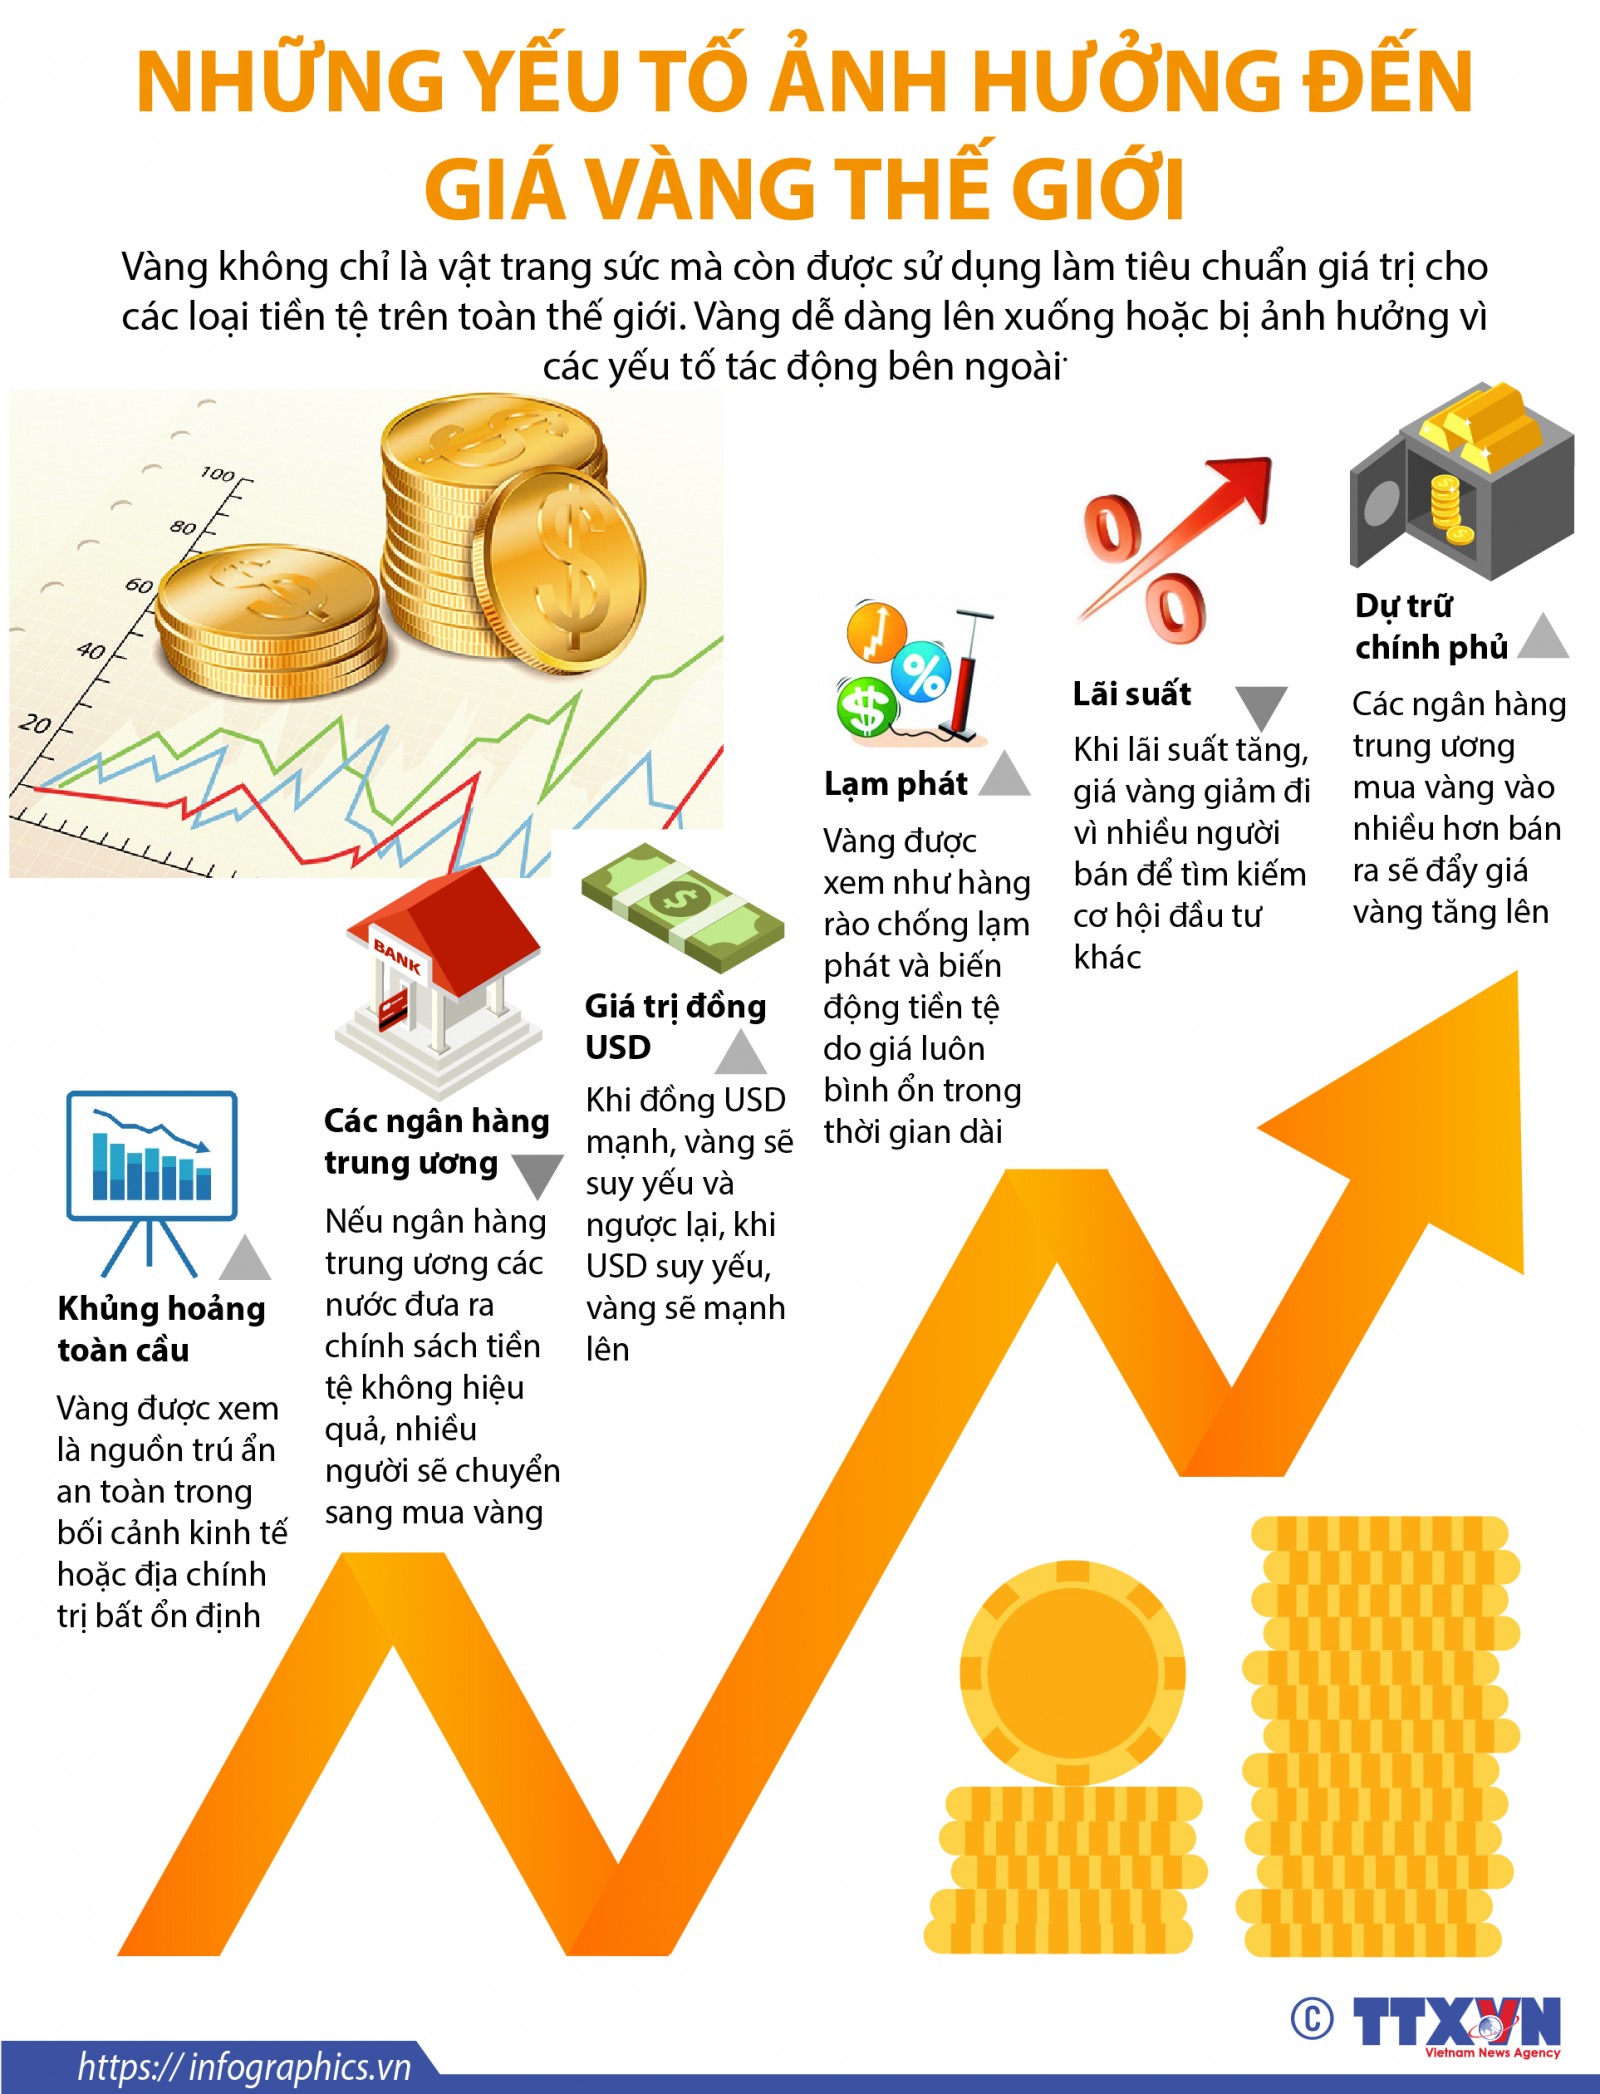 Cùng cập nhật thông tin vàng vàng đắt giá trên toàn thế giới. Xem hình ảnh để hiểu rõ hơn về những yếu tố ảnh hưởng đến giá vàng và đưa ra quyết định đầu tư thông minh.